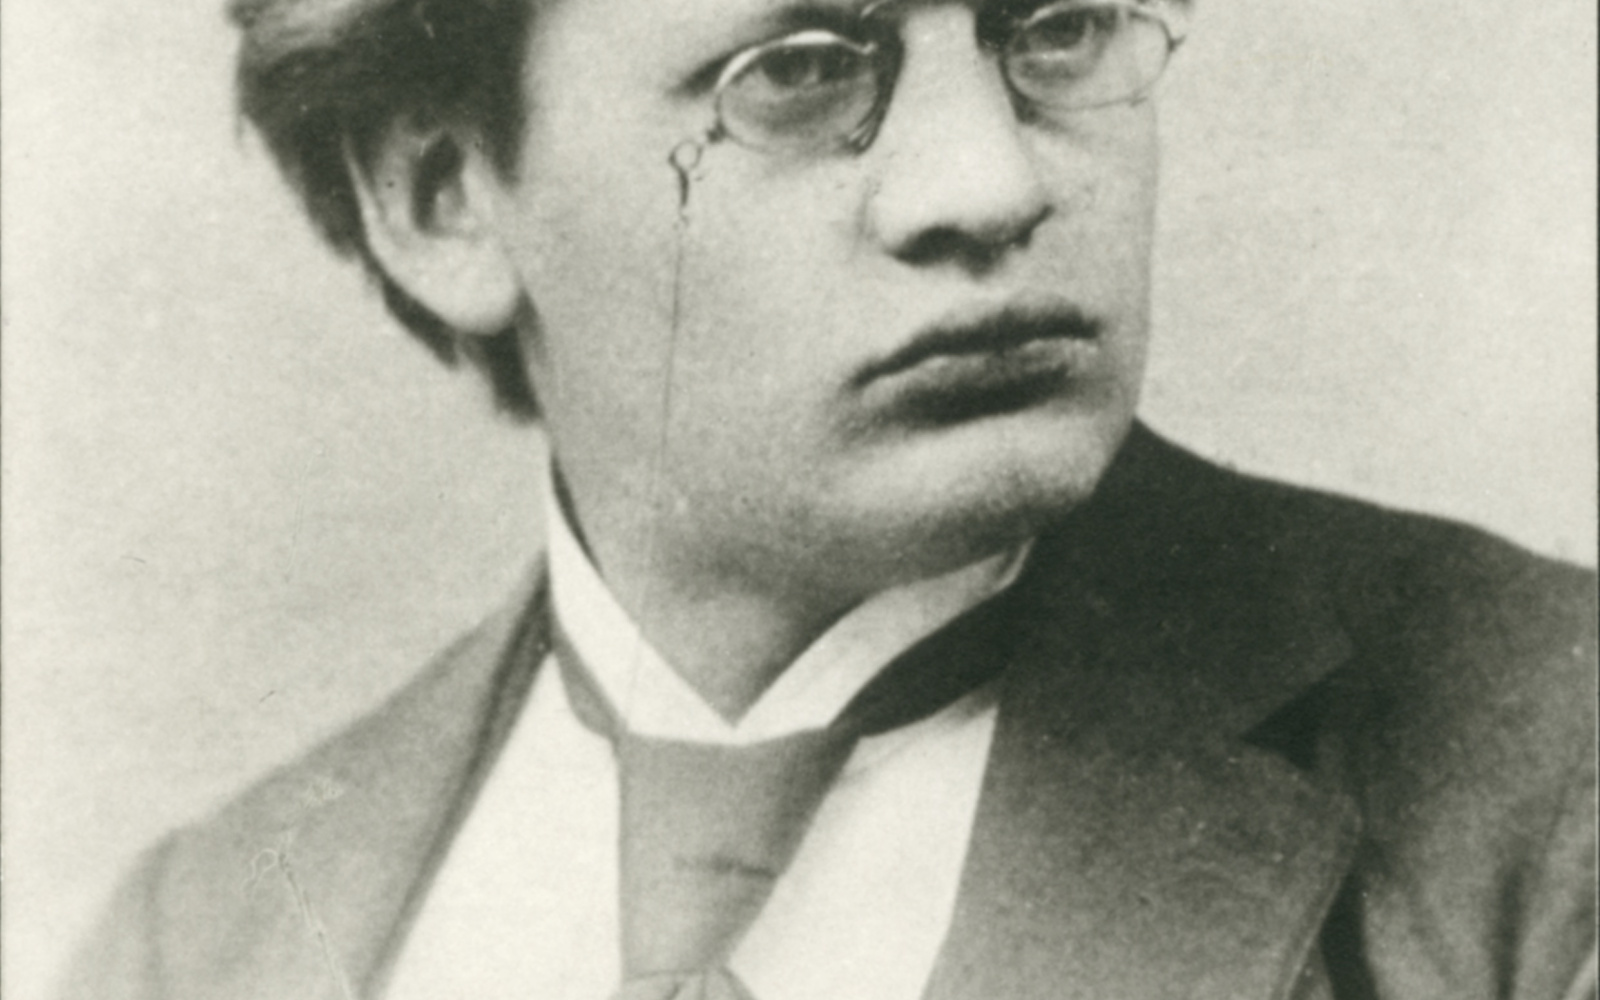 Porträtzeichnung von einem Mann mit Brille